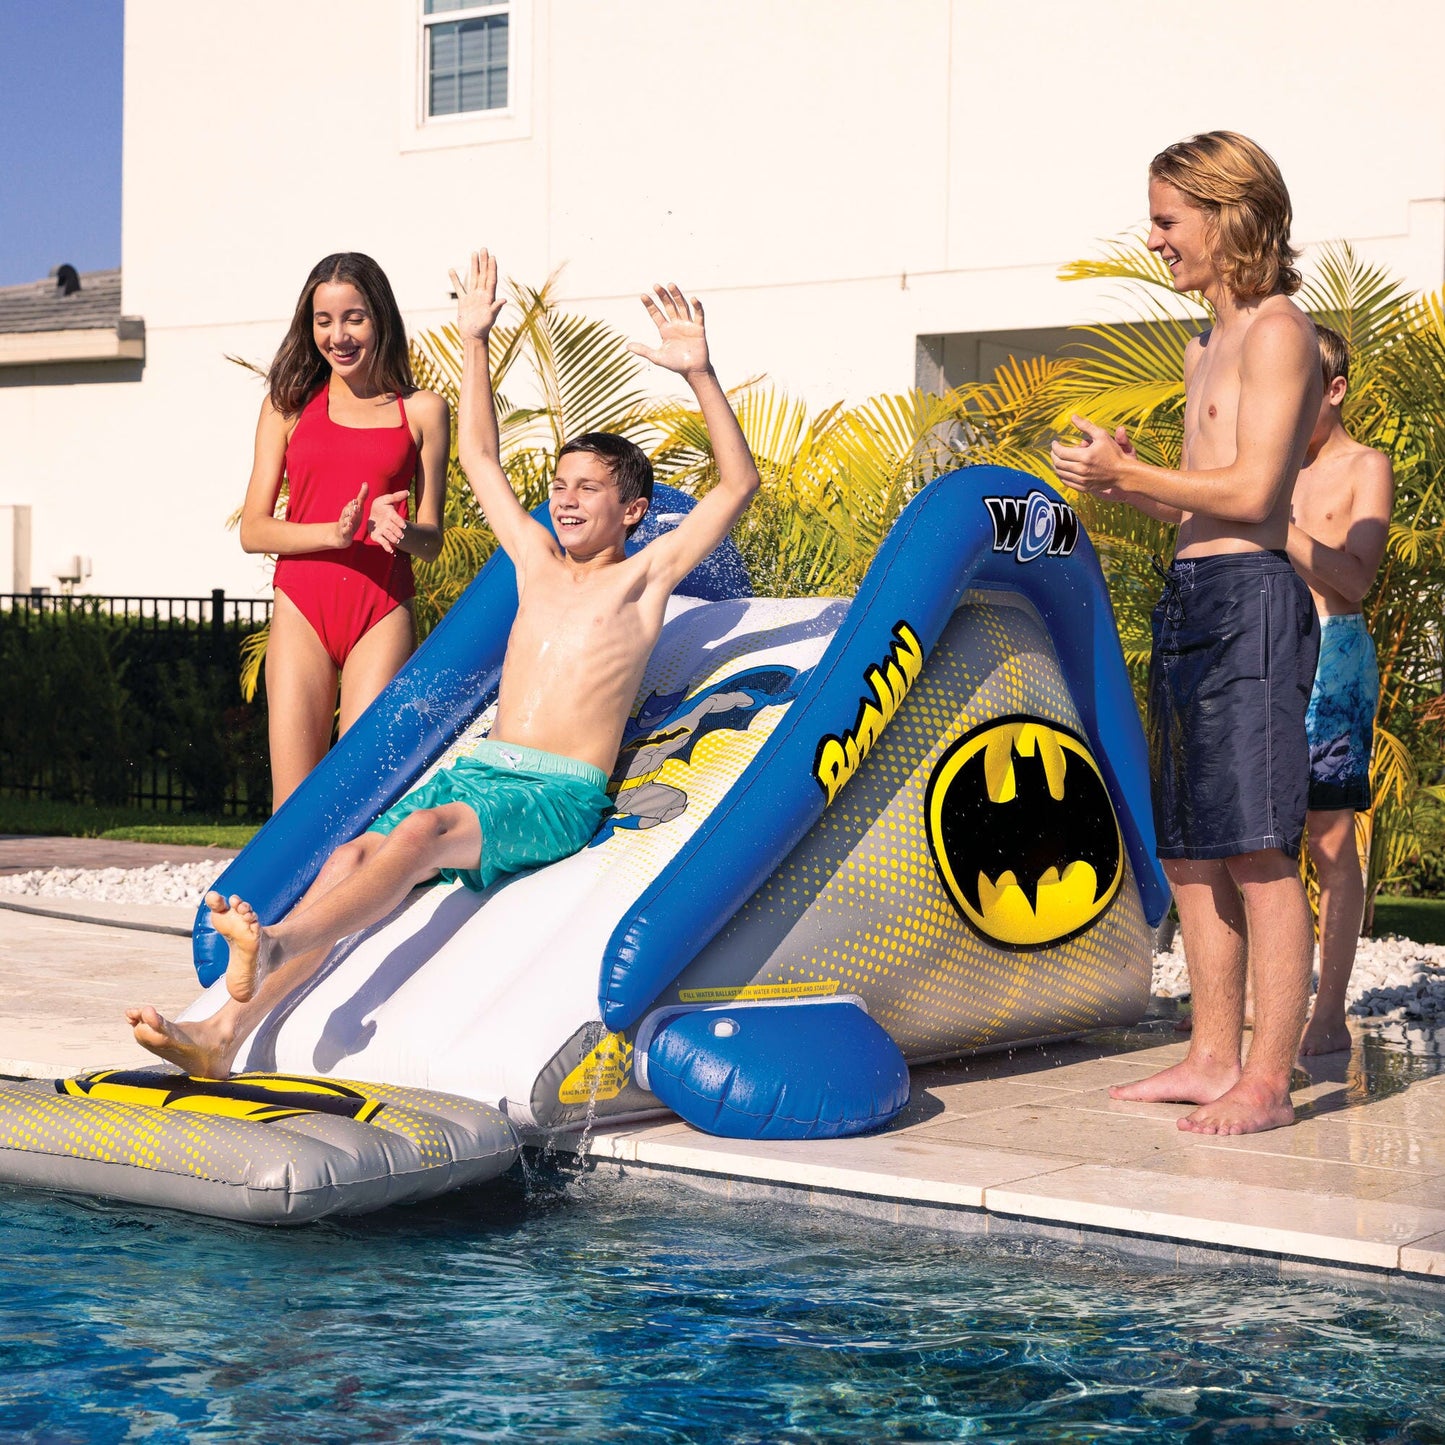 Batman Pool Slide with Built-in Soaker Sprinklers